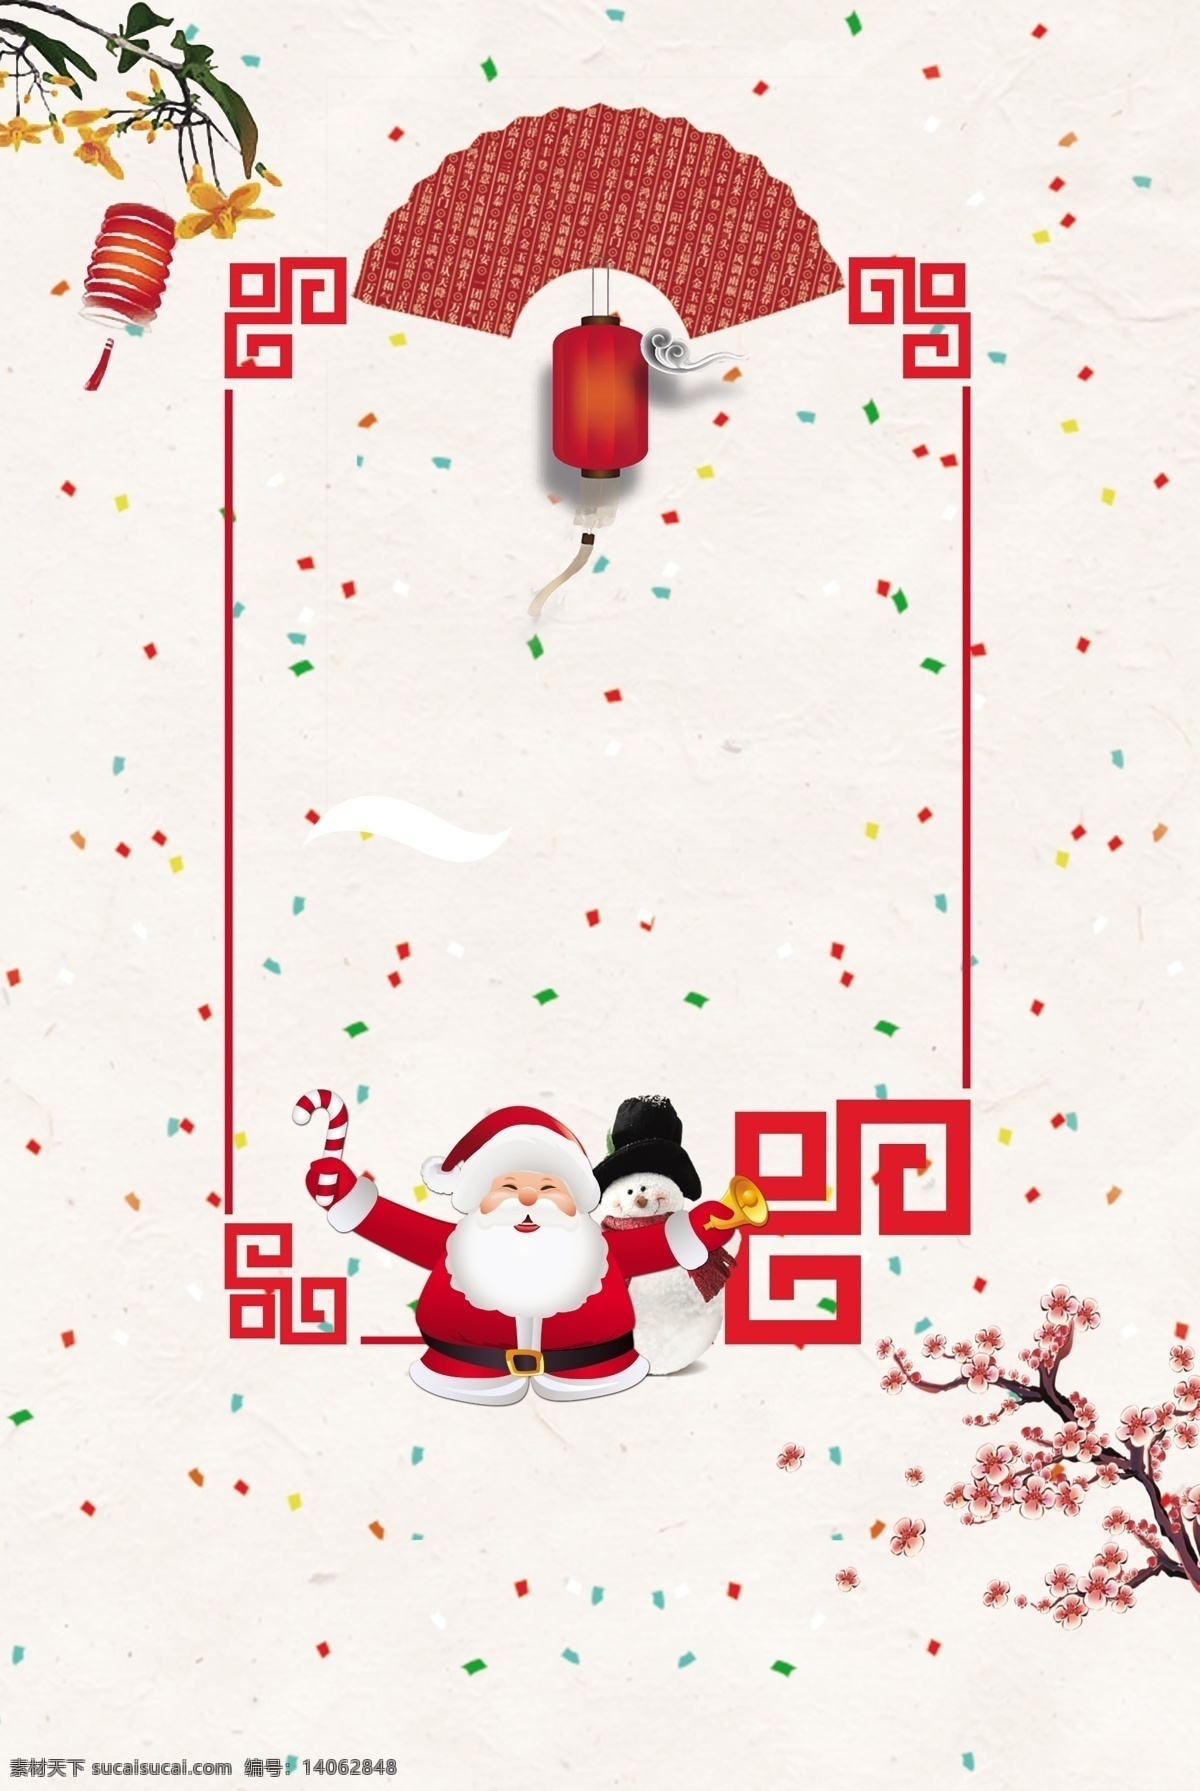 简约 热气球 圣诞节 卡通 广告 背景 图 雪花 可爱 圣诞树 袜子 欢乐 扁平风 雪人 圣诞老人 卡通风 广告背景